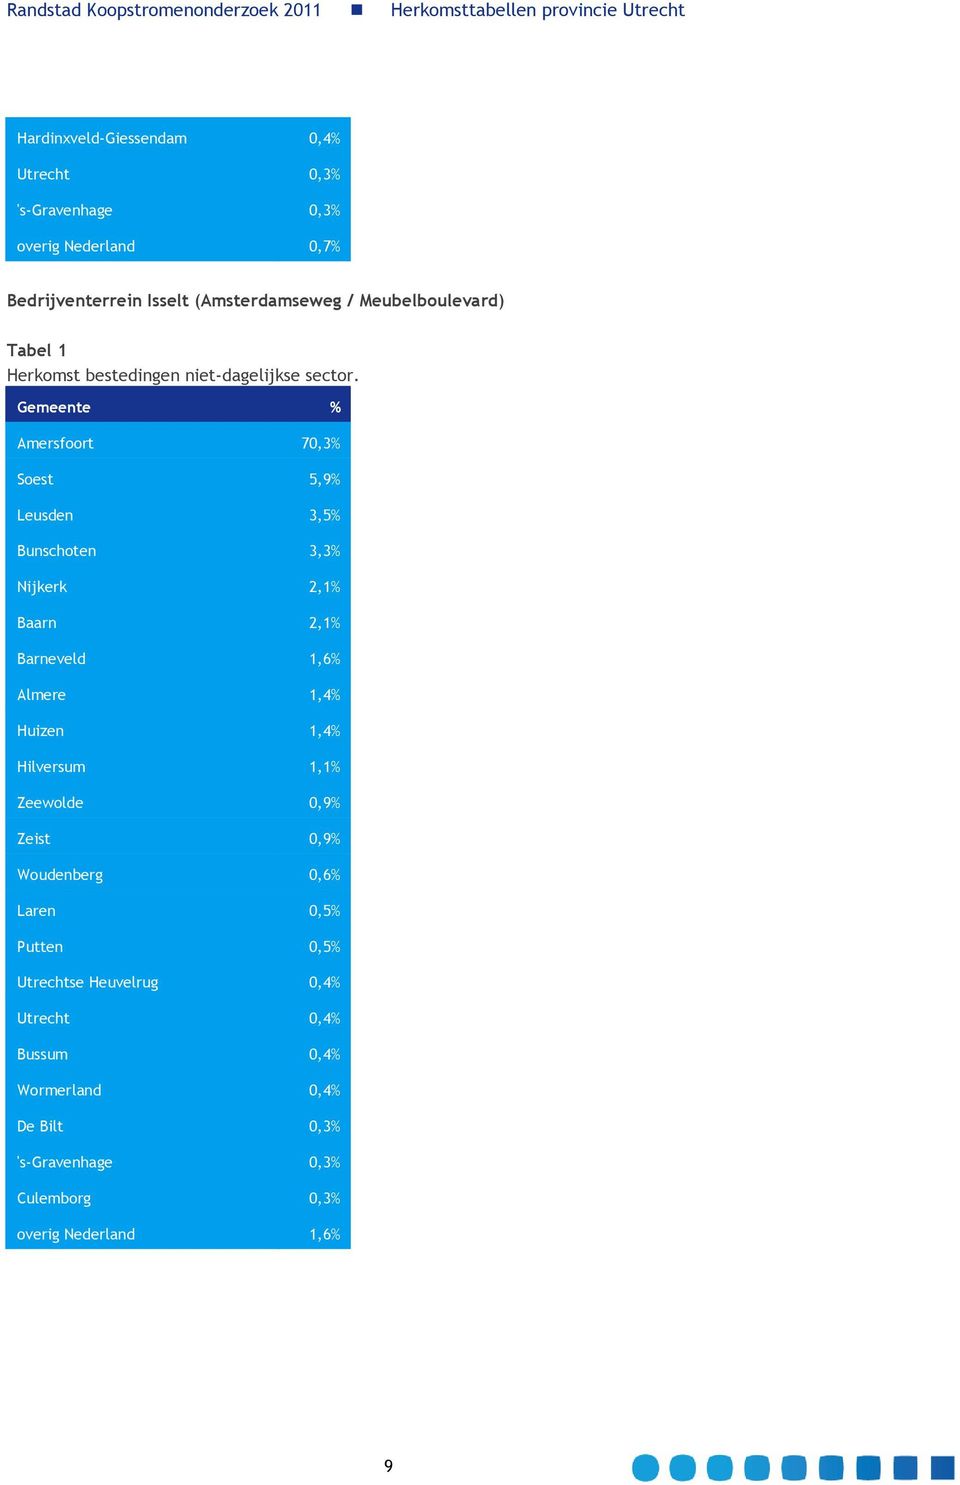 Gemeente % Amersfoort 70,3% Soest 5,9% Leusden 3,5% Bunschoten 3,3% Nijkerk 2,1% Baarn 2,1% Barneveld 1,6% Almere 1,4% Huizen 1,4%